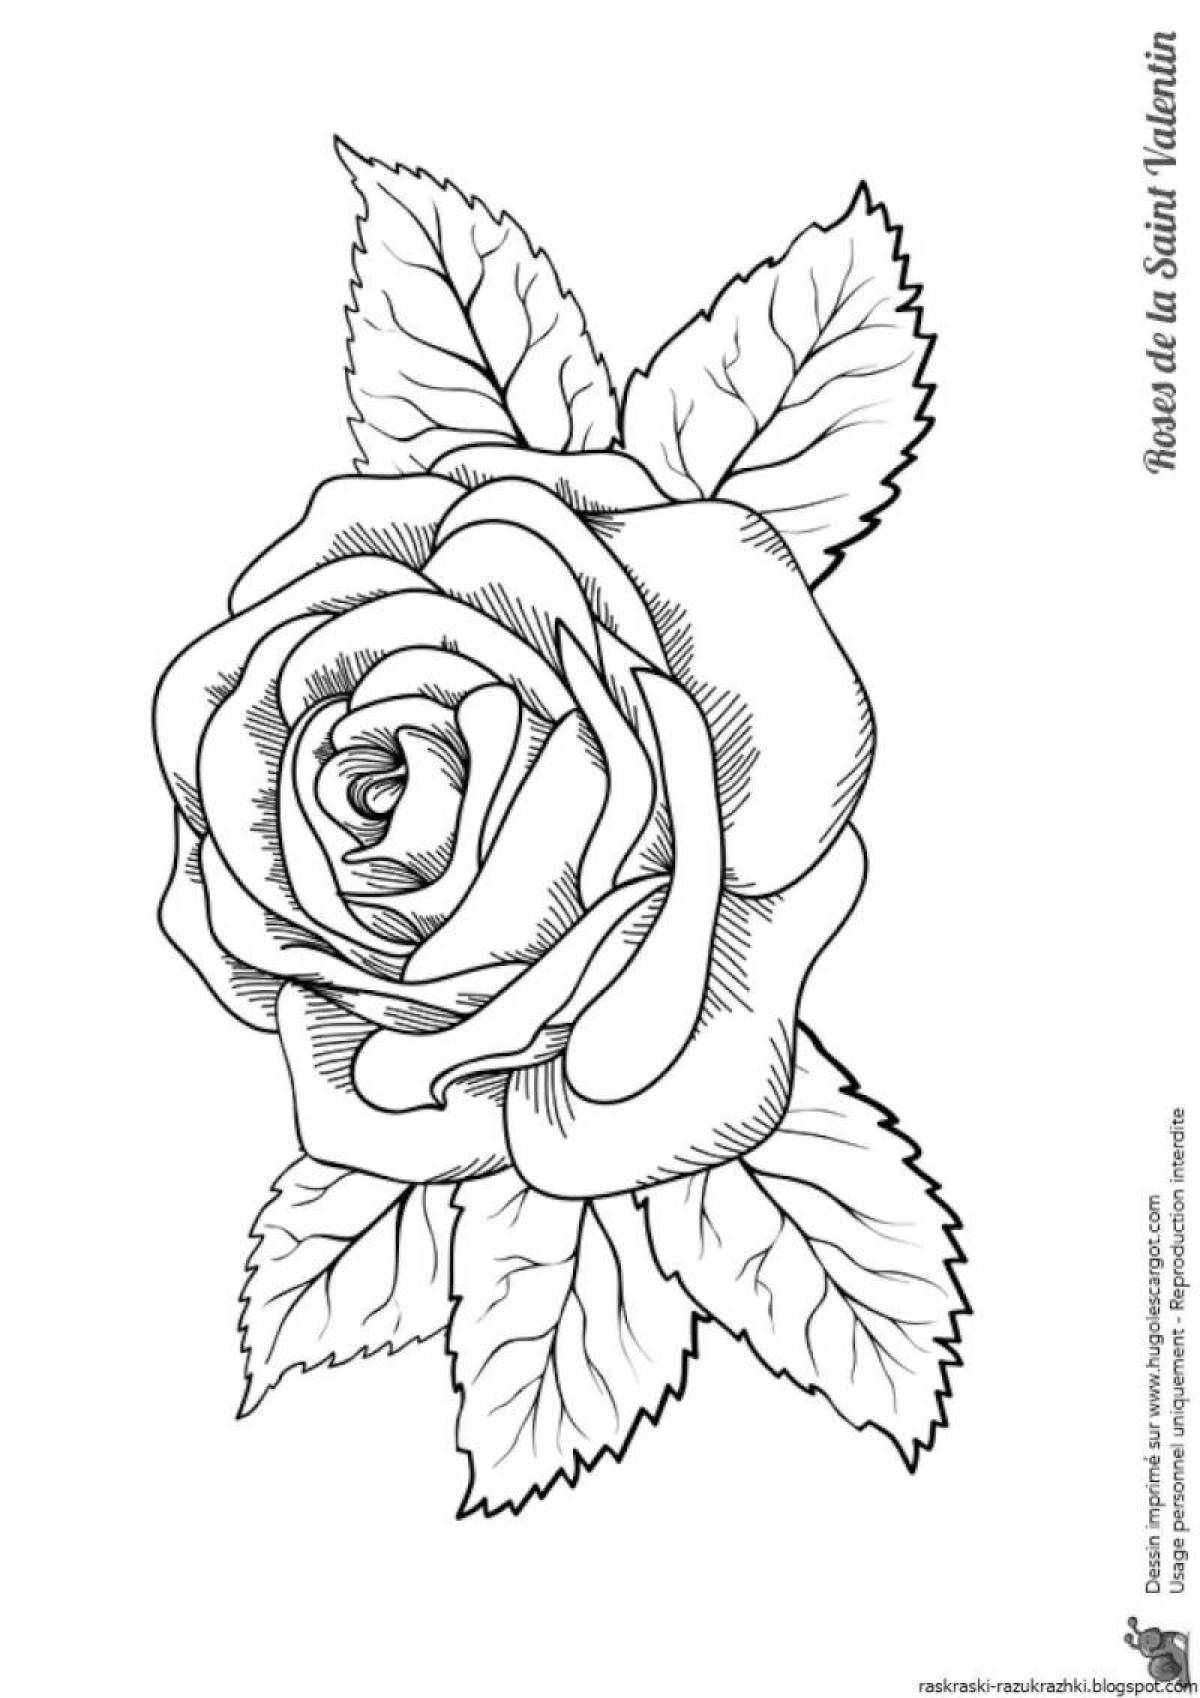 Прекрасная раскраска цветок розы